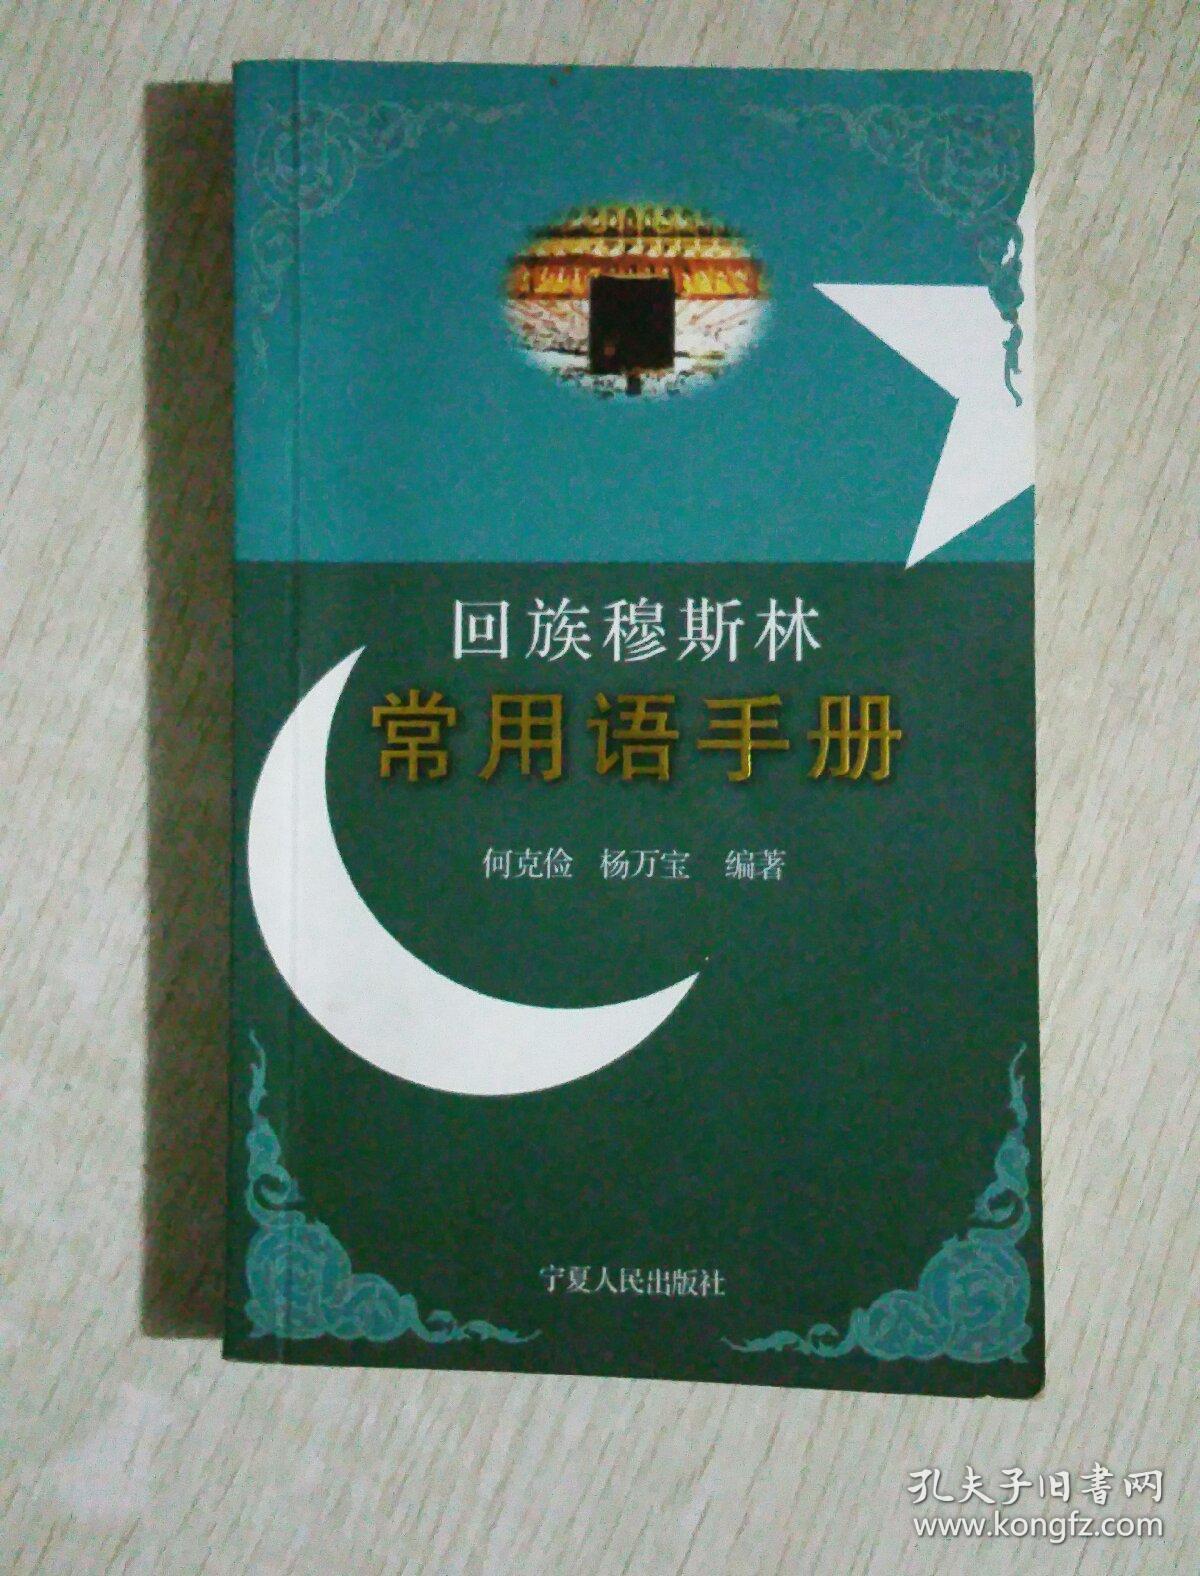 回族穆斯林常用语手册